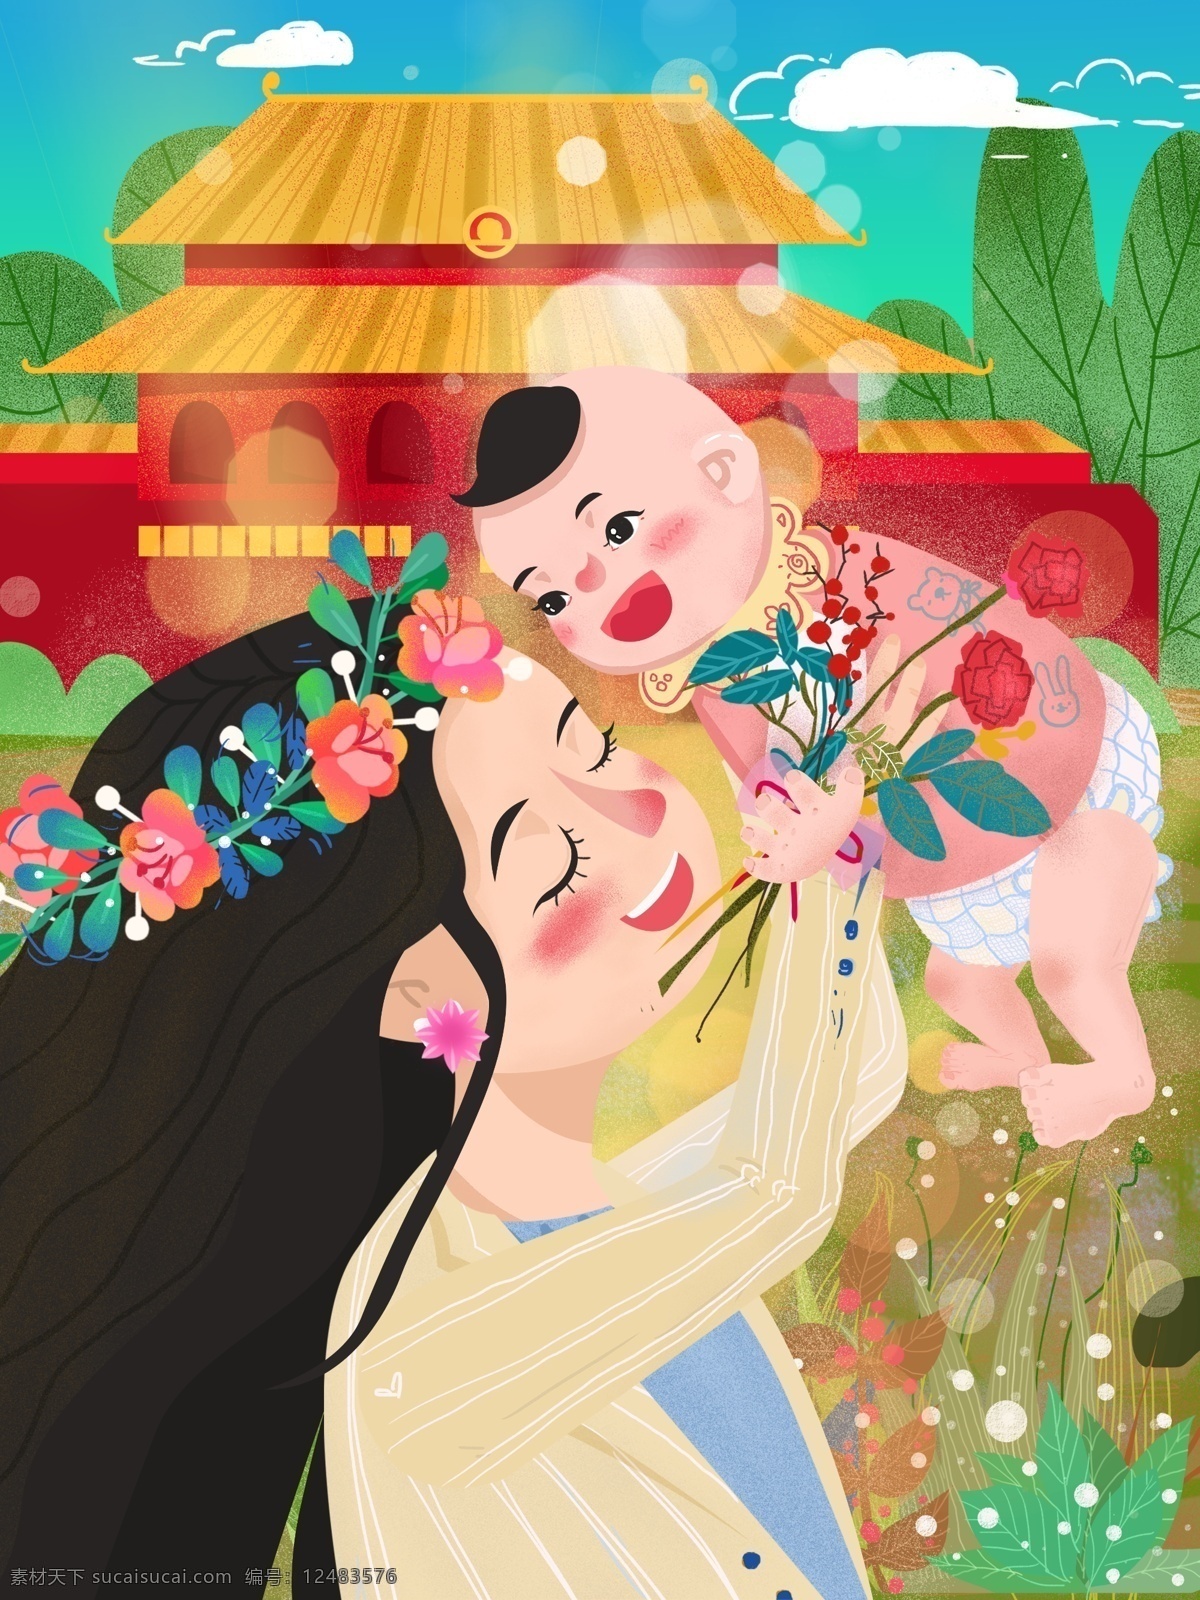 母亲节 温馨 唯美 三八妇女节 母婴 幸福 卡通 插画 可爱 幸福时刻 鲜花 光斑